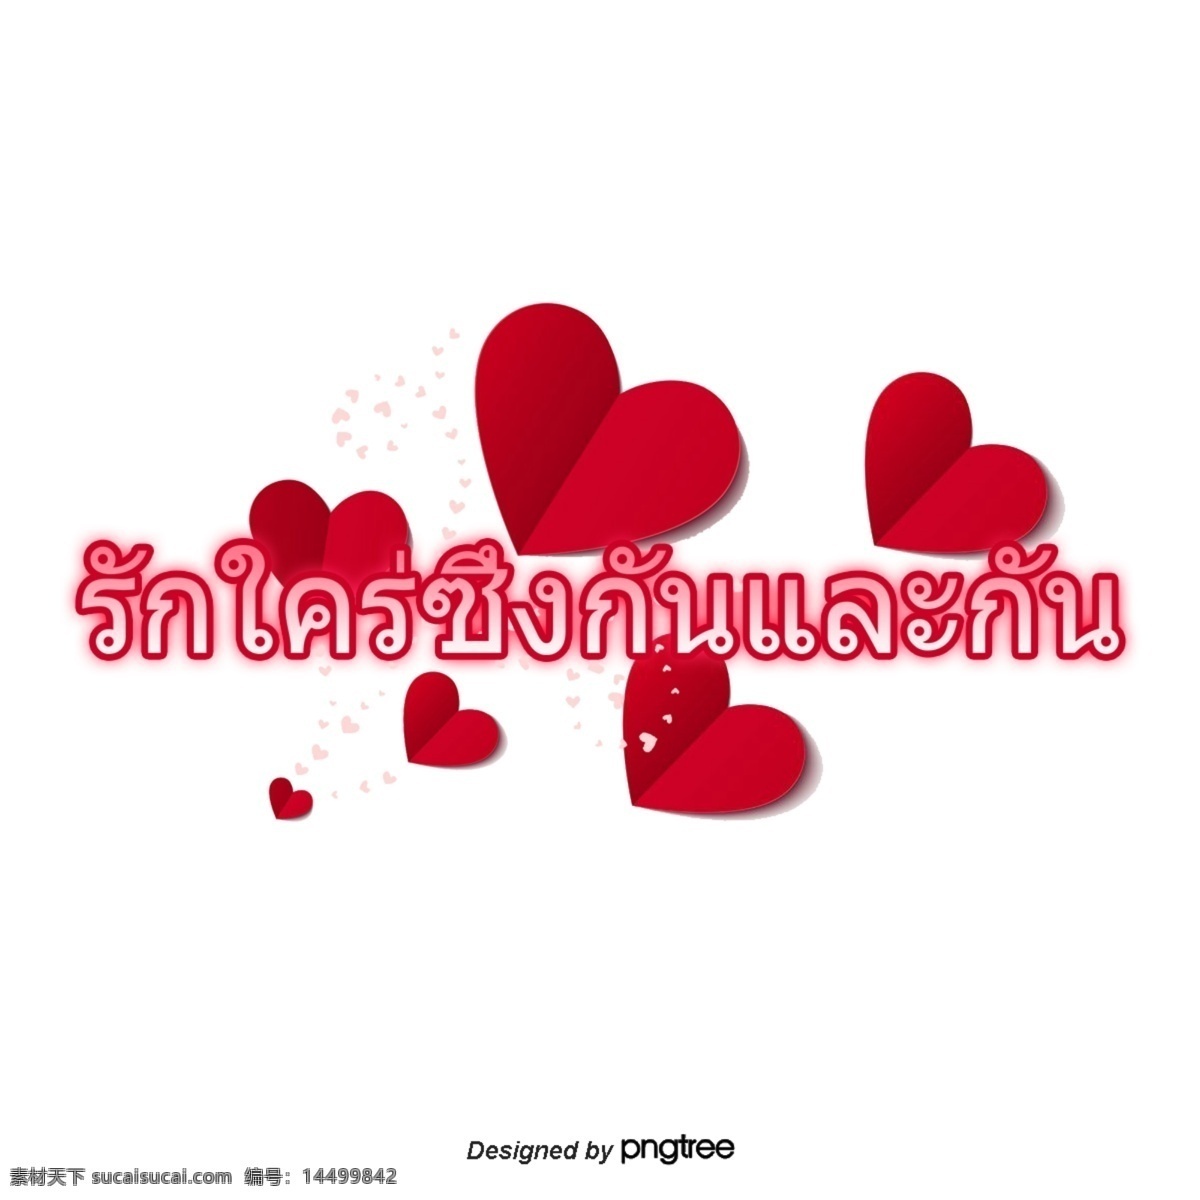 泰国 字母 字体 相互 亲密 红色 心